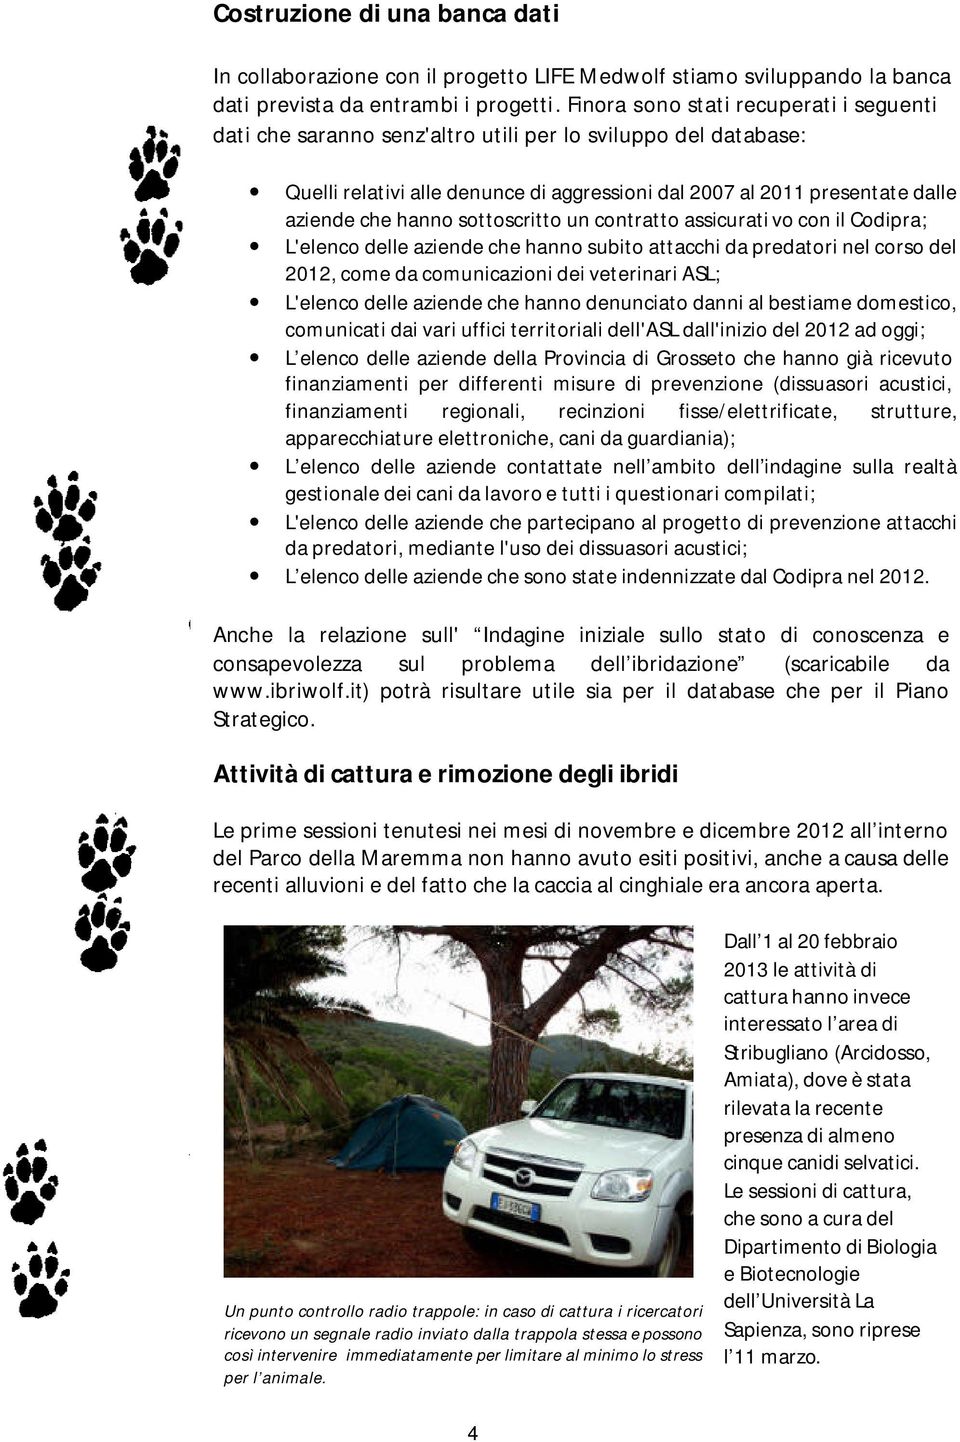 sottoscritto un contratto assicurati vo con il Codipra; L'elenco delle aziende che hanno subito attacchi da predatori nel corso del 2012, come da comunicazioni dei veterinari ASL; L'elenco delle